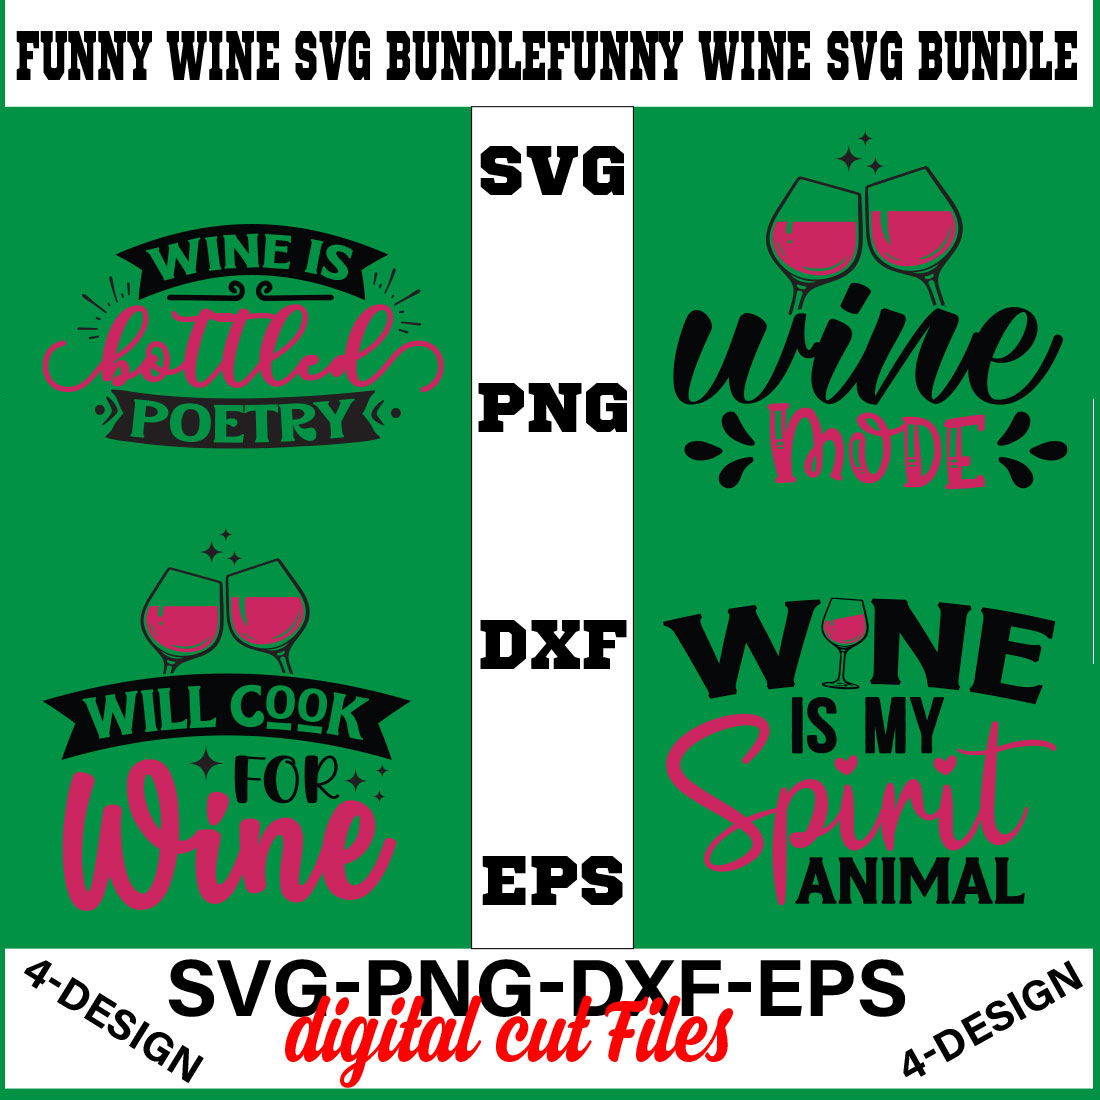 Funny Svg T-shirt Design Bundle Volume-10 cover image.